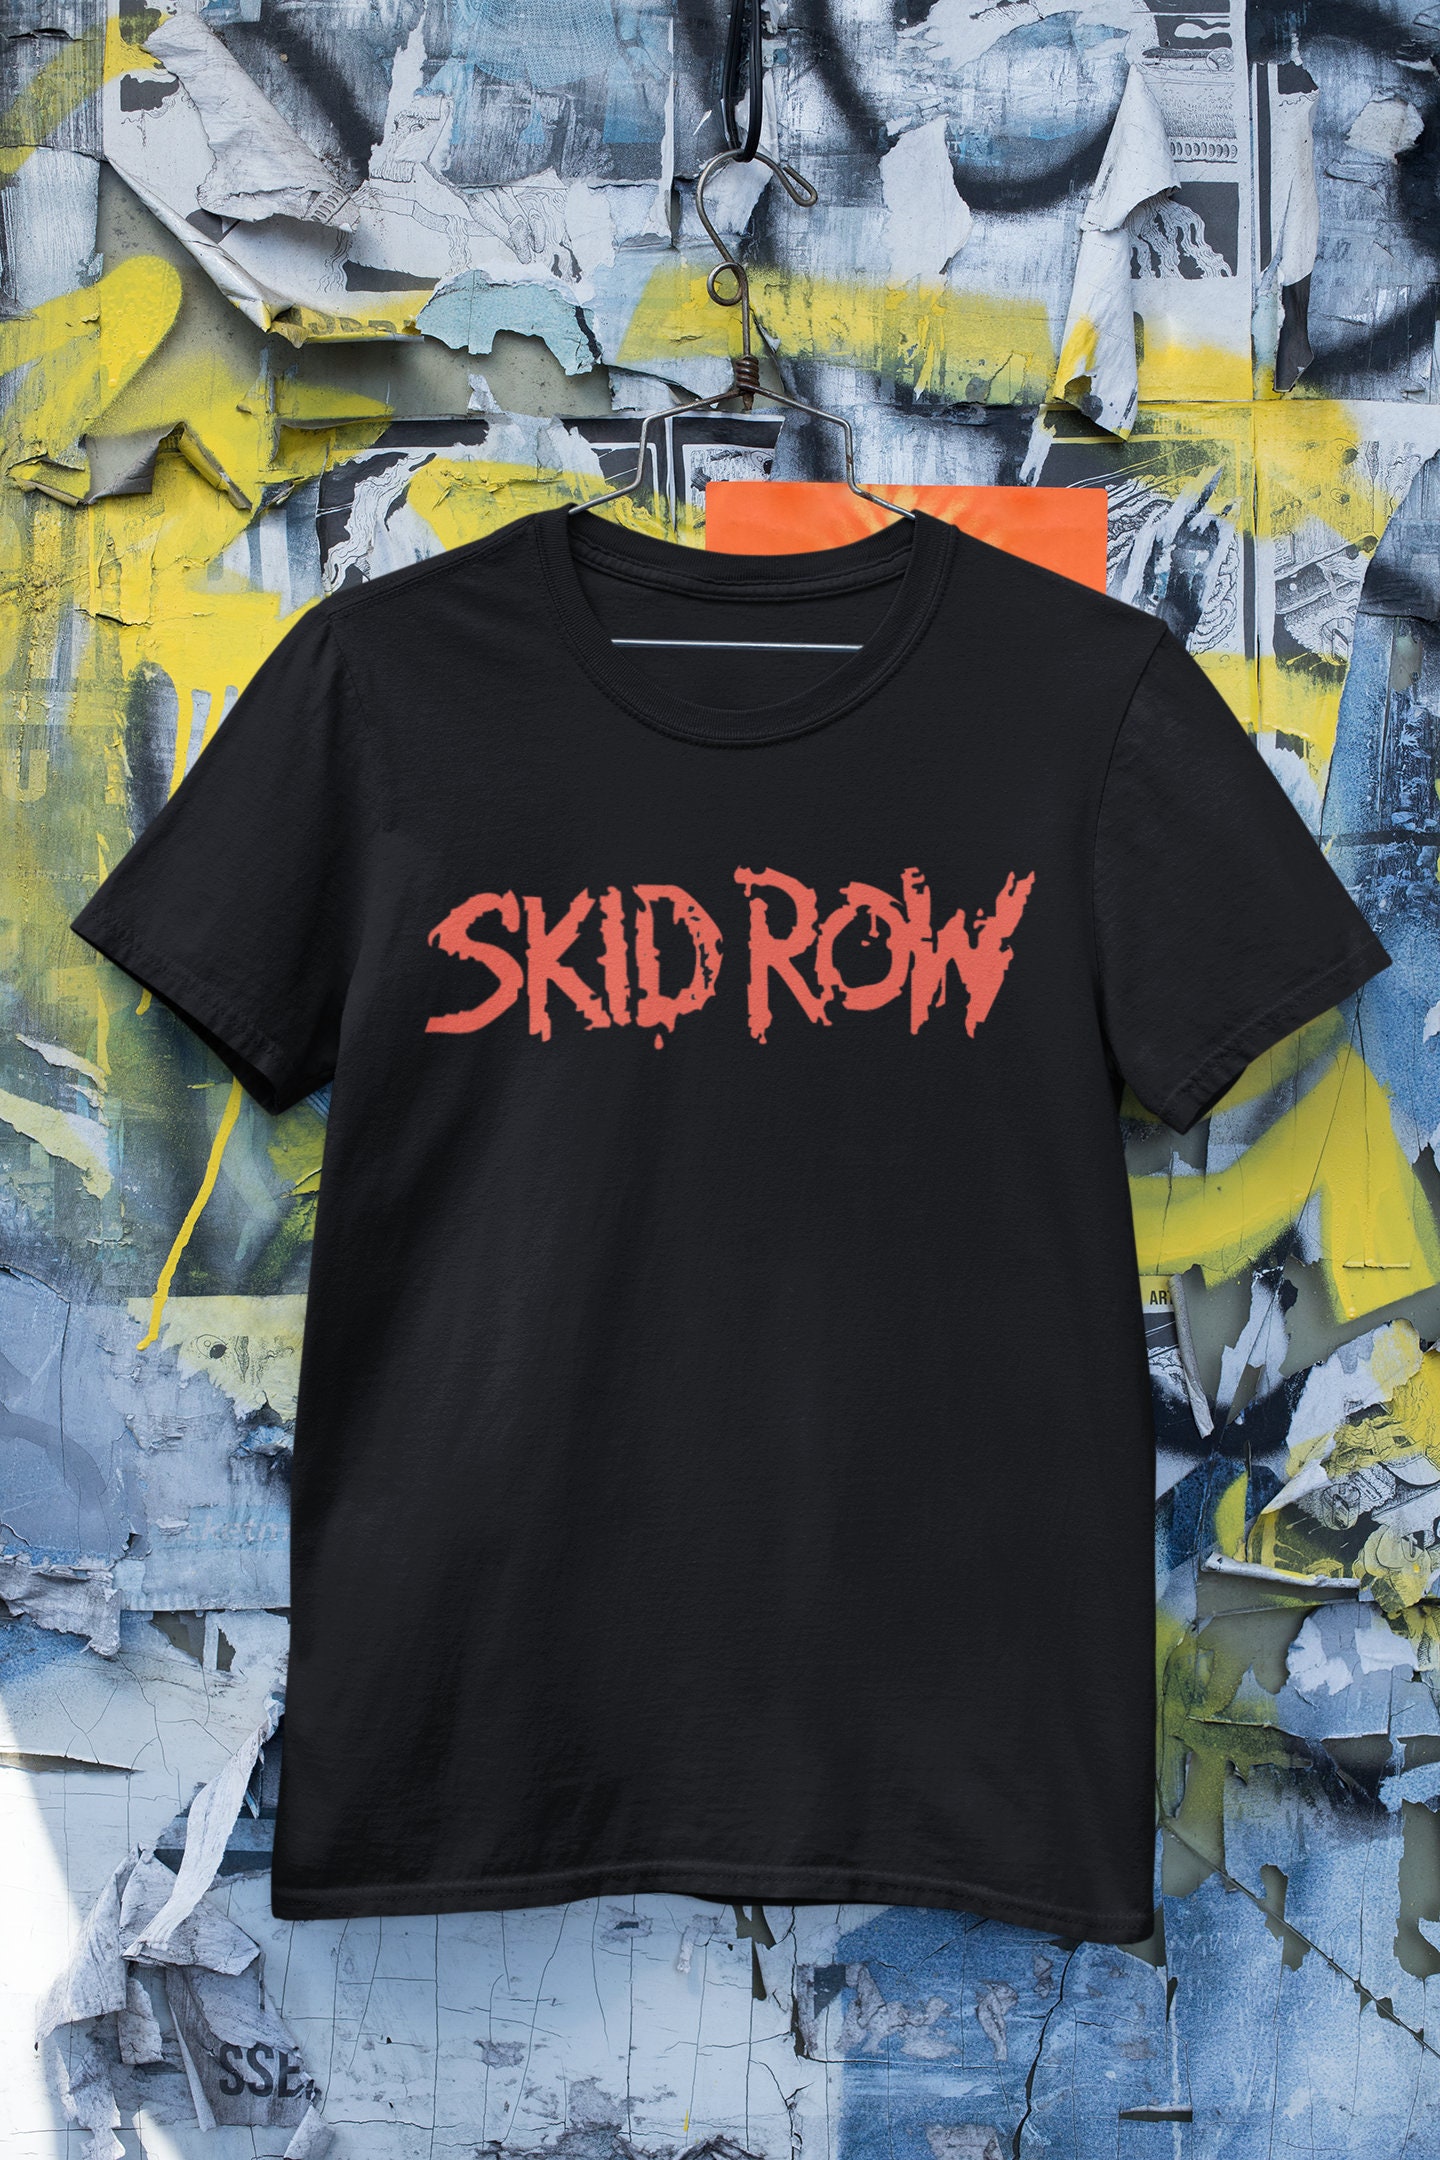 Skid Row Tshirt Hoodie Longsleeve Vintage Unisex von RomioshopID